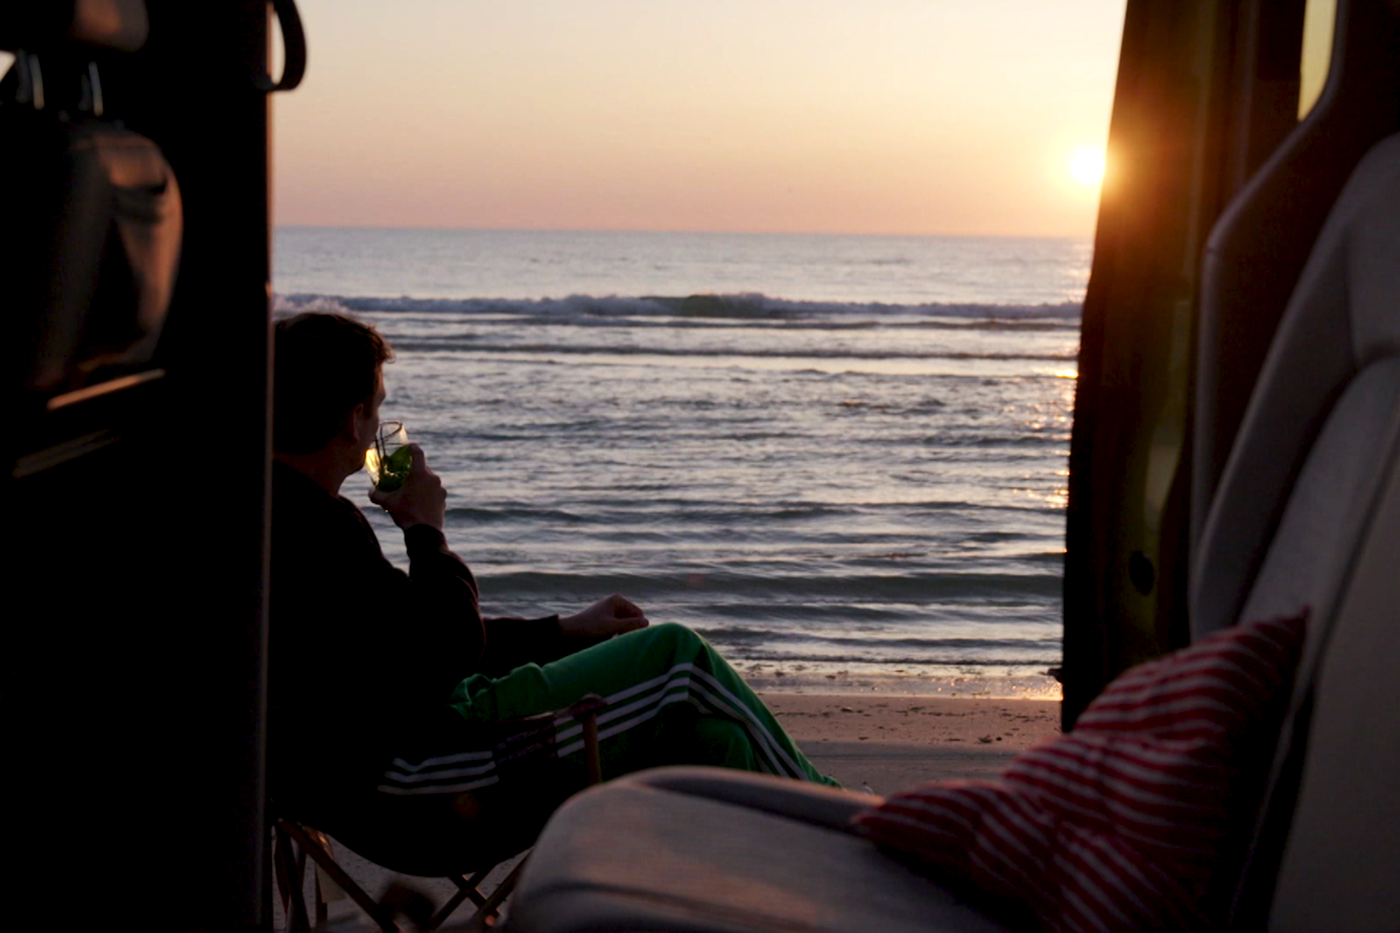 Jurre parkeert zijn elektrische auto op het strand, drinkt wat en kijkt uit over de zee naar de zonsondergang